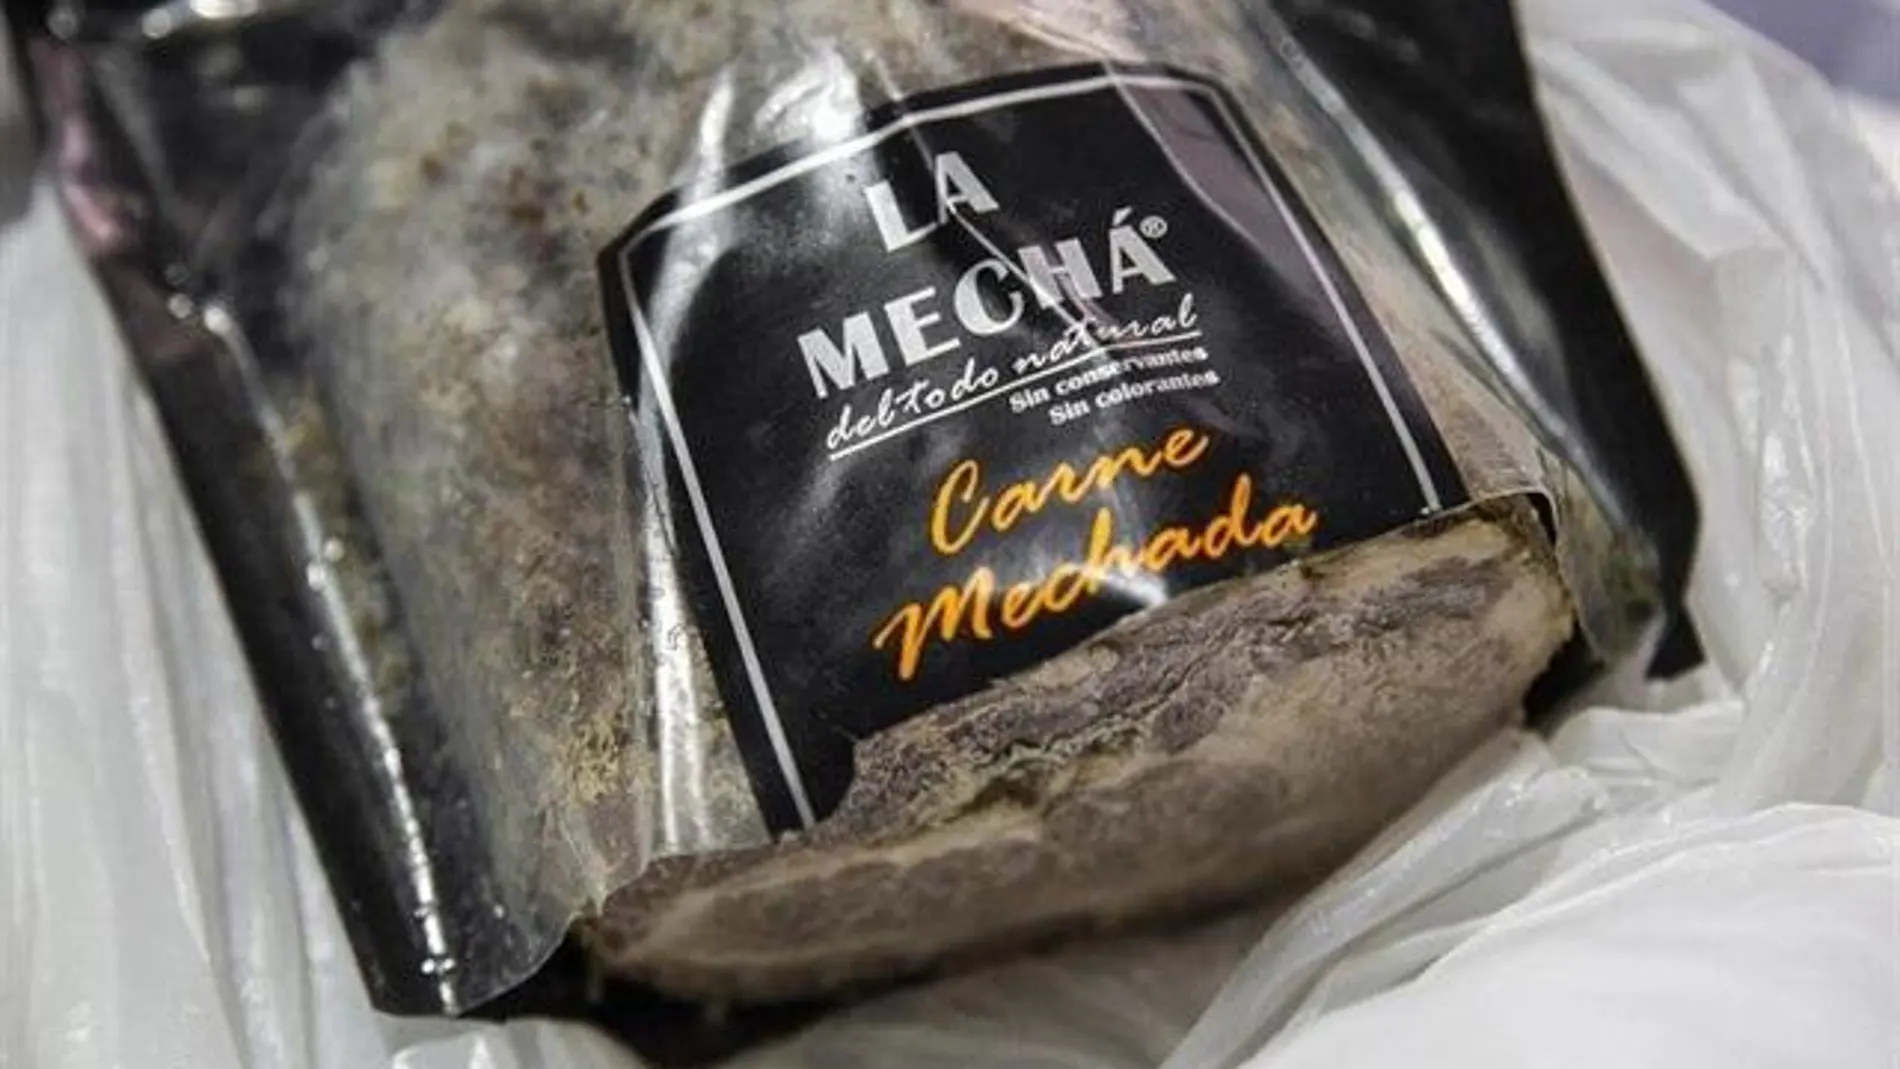 El brote de listeriosis estuvo vinculado a una carne mechada comercializada por Magrudis